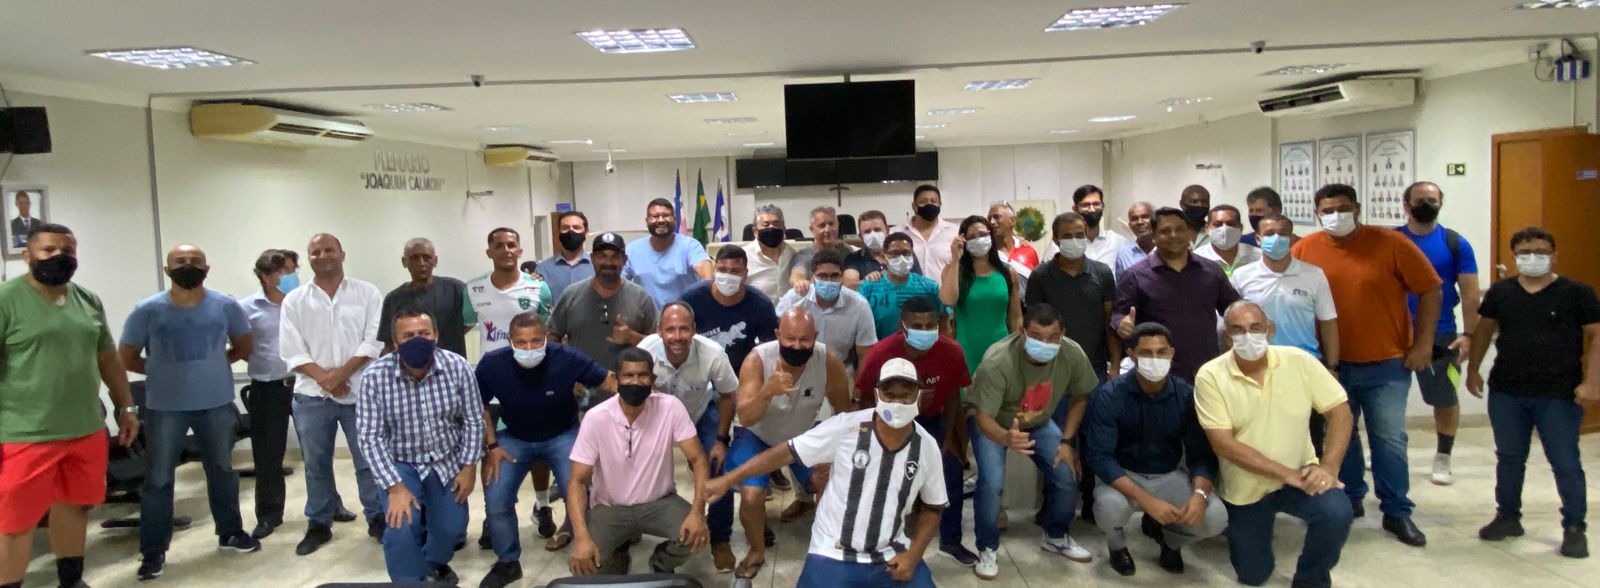 Vereadores participam de reunião para criação de Conselho de Esporte em Linhares 